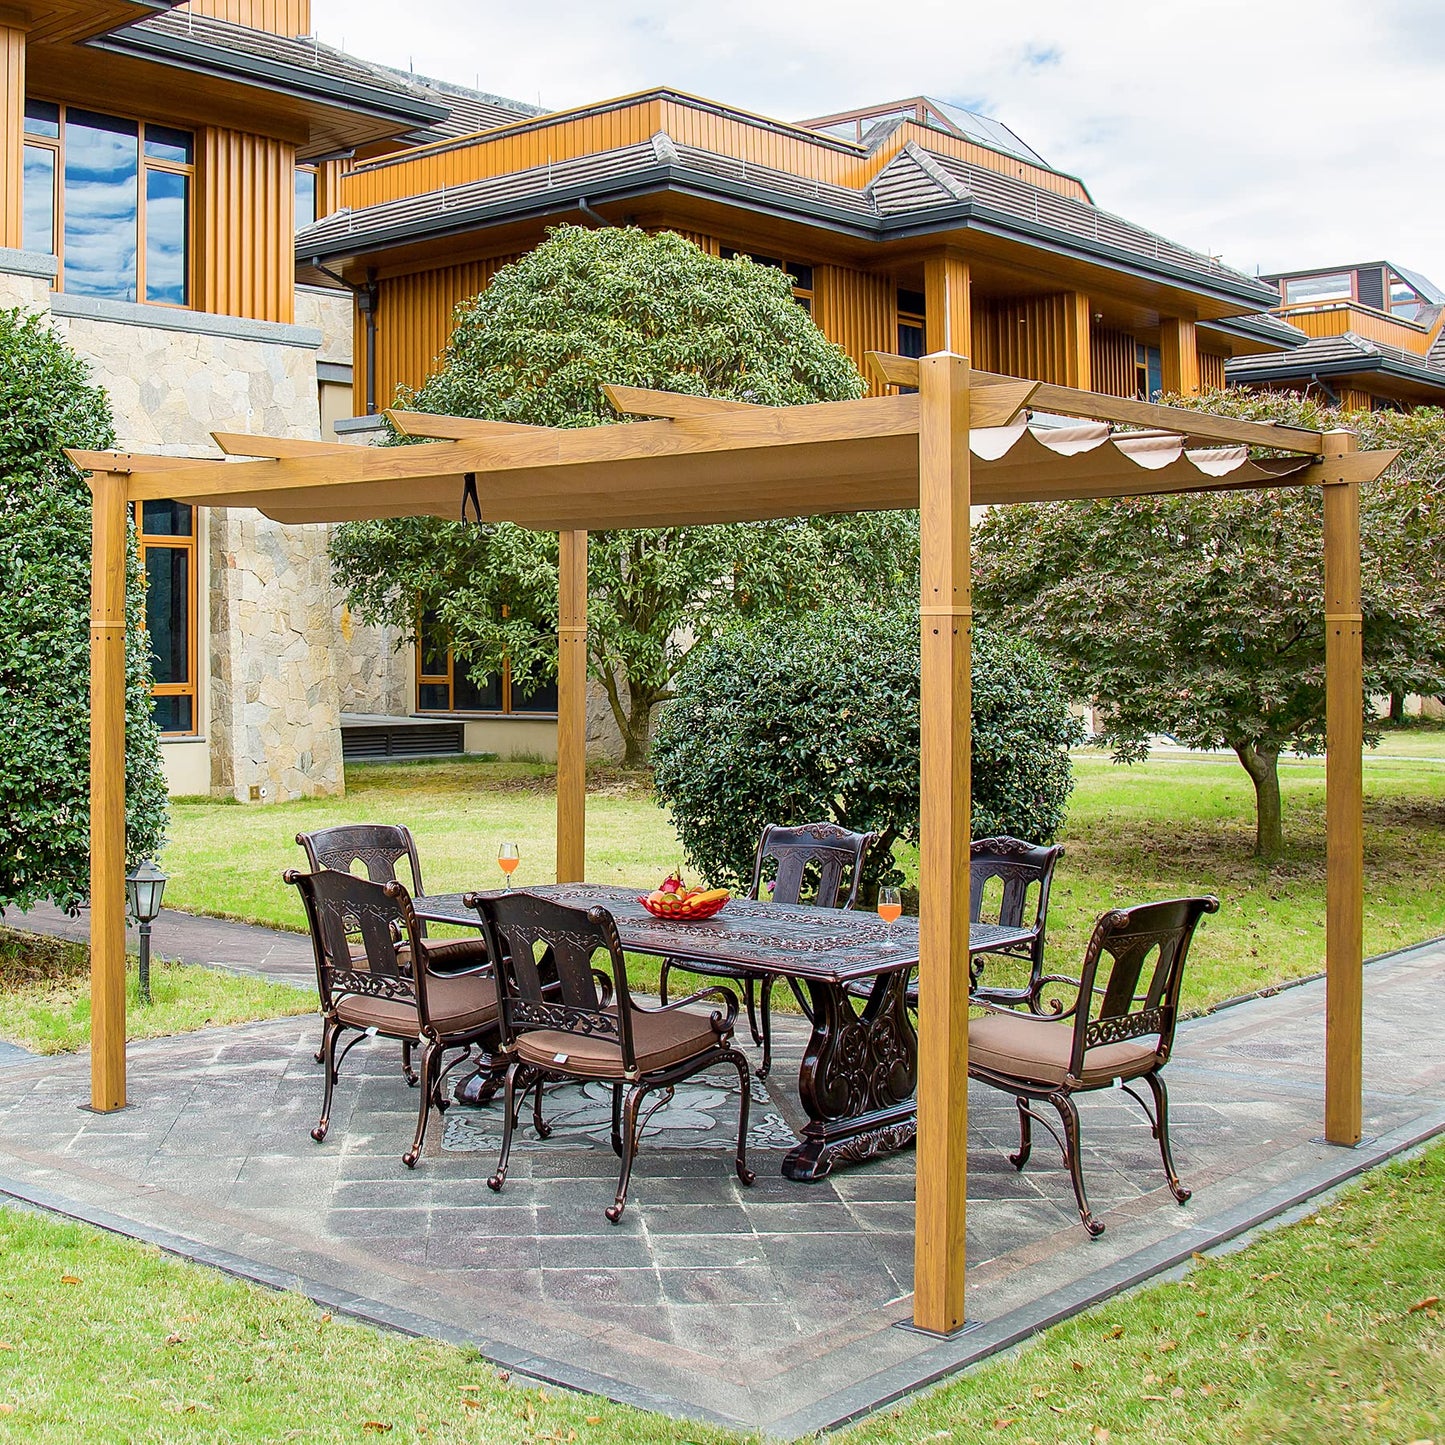 9 x 13 ft Retractable Pergola, Wood Grain Aluminum Pergola with Adjustable Canopy Roof